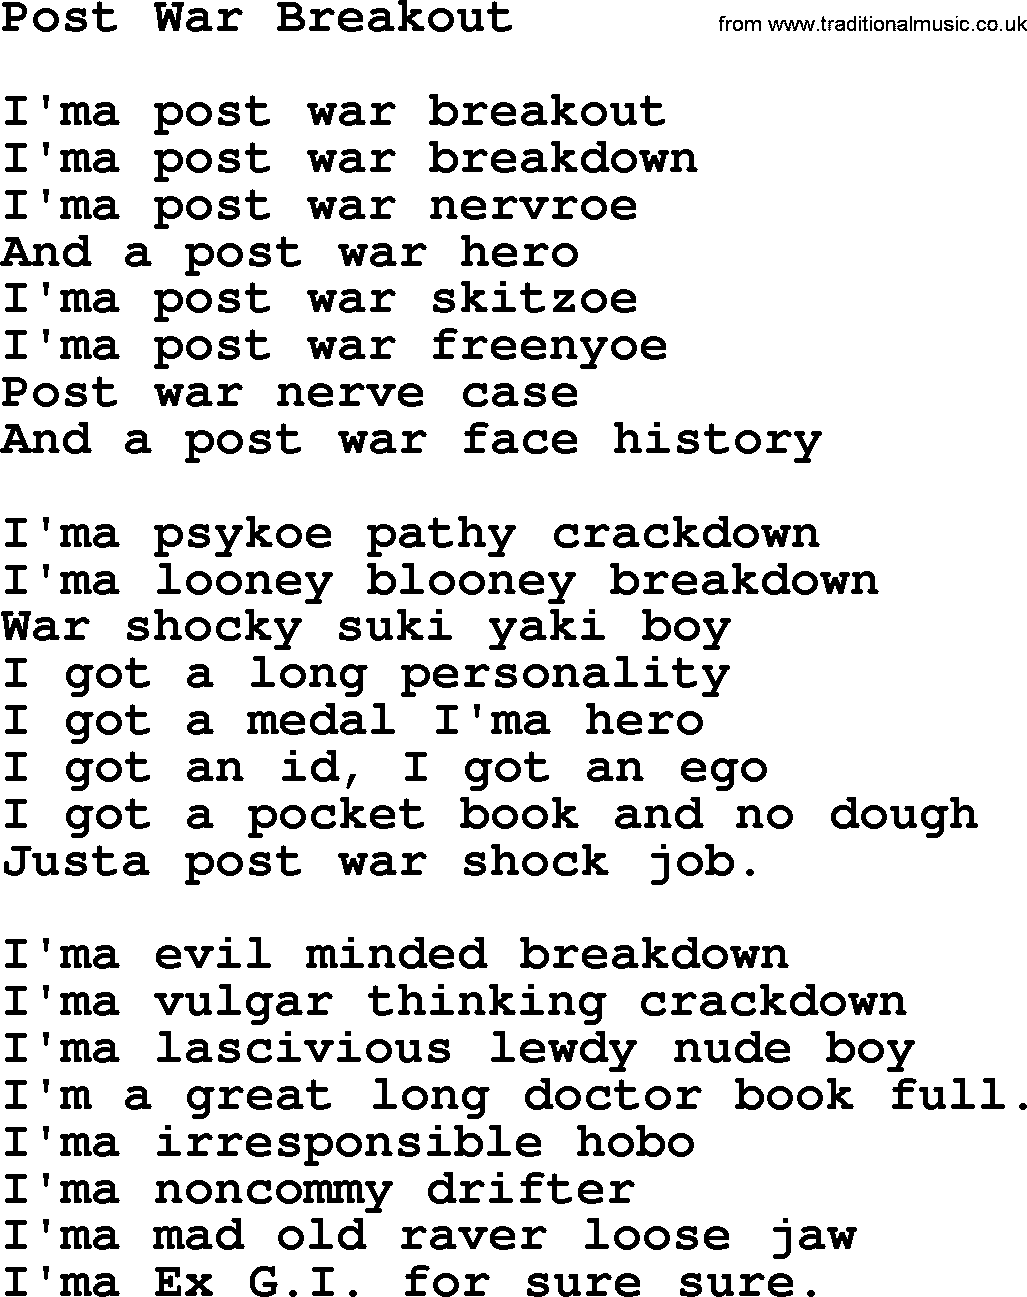 Woody Guthrie song Post War Breakout lyrics